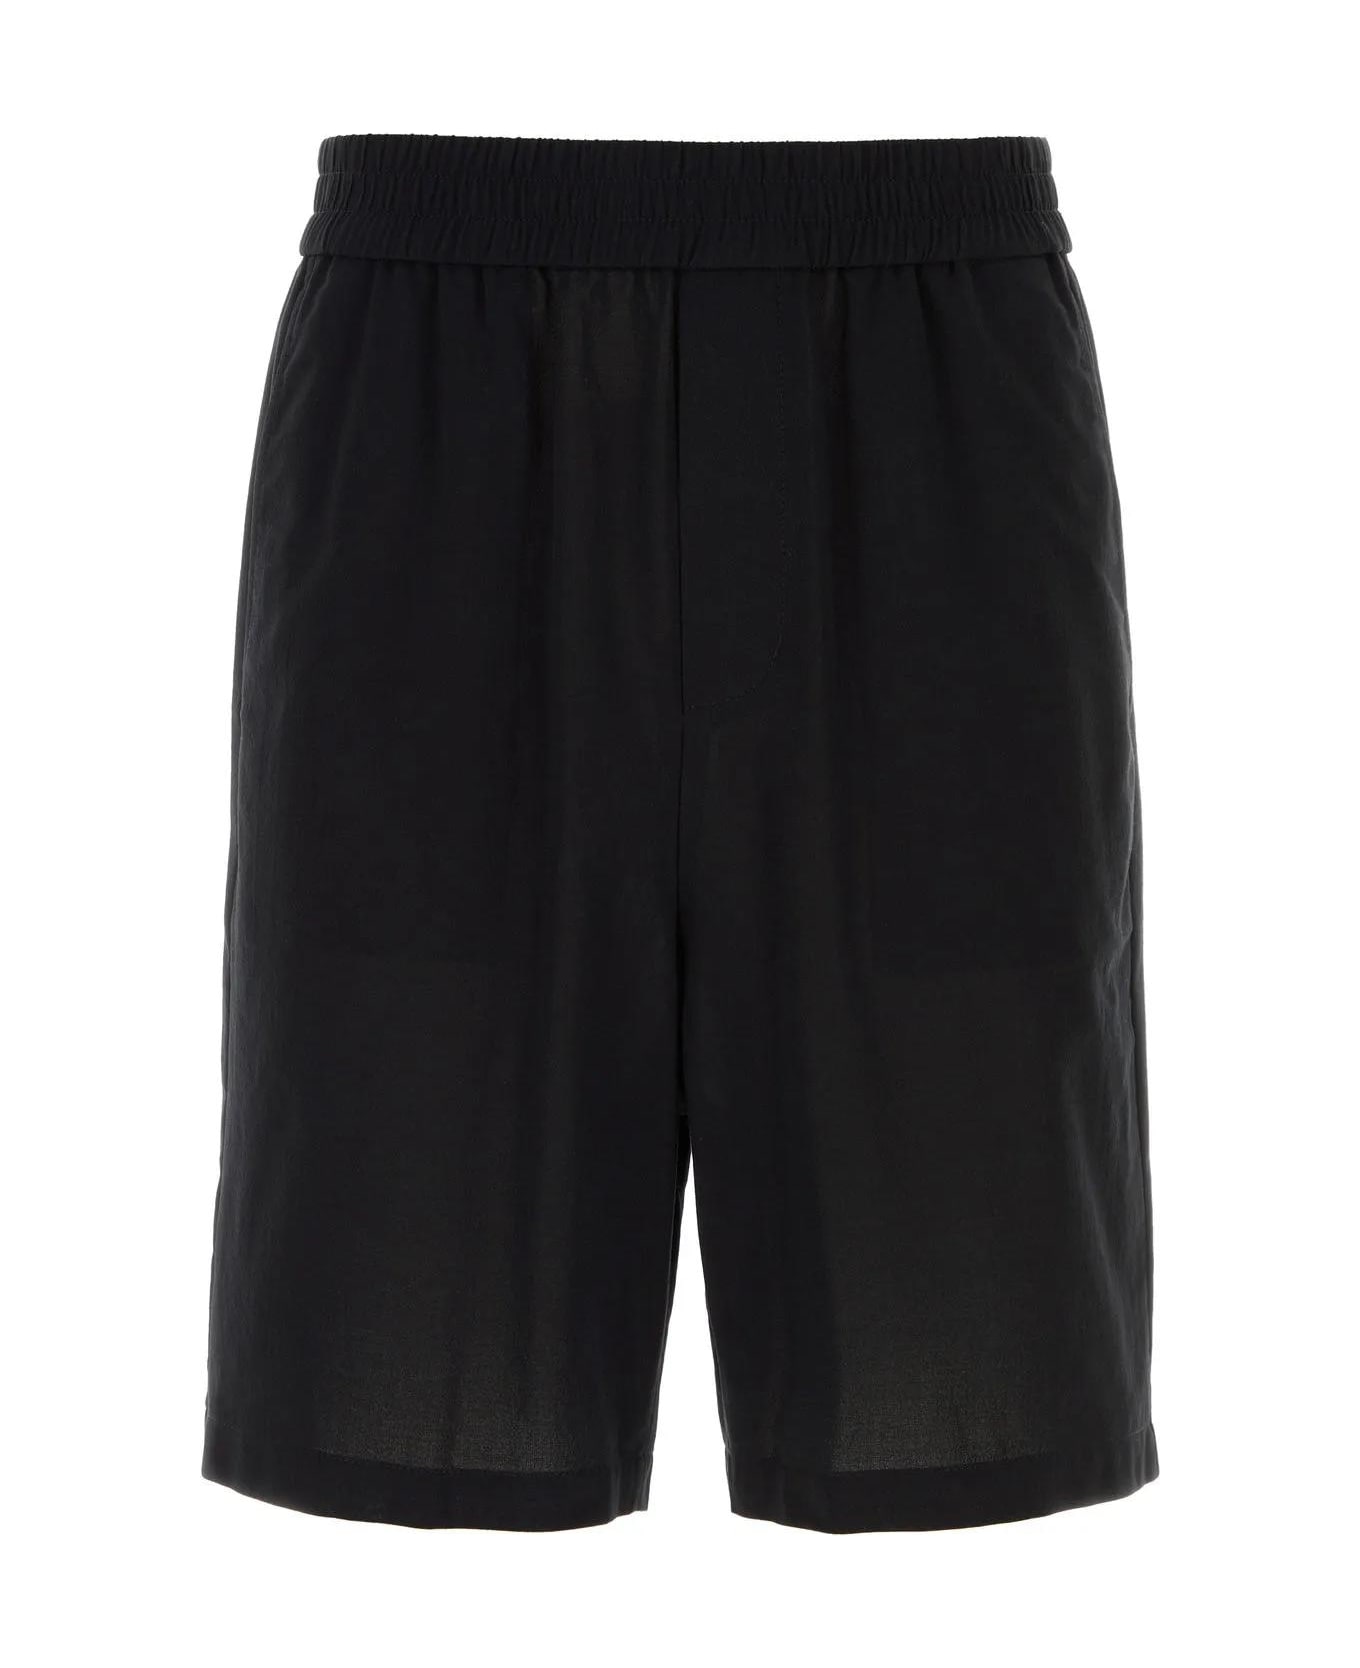 Ami Alexandre Mattiussi Black Cotton Bermuda Shorts - Black